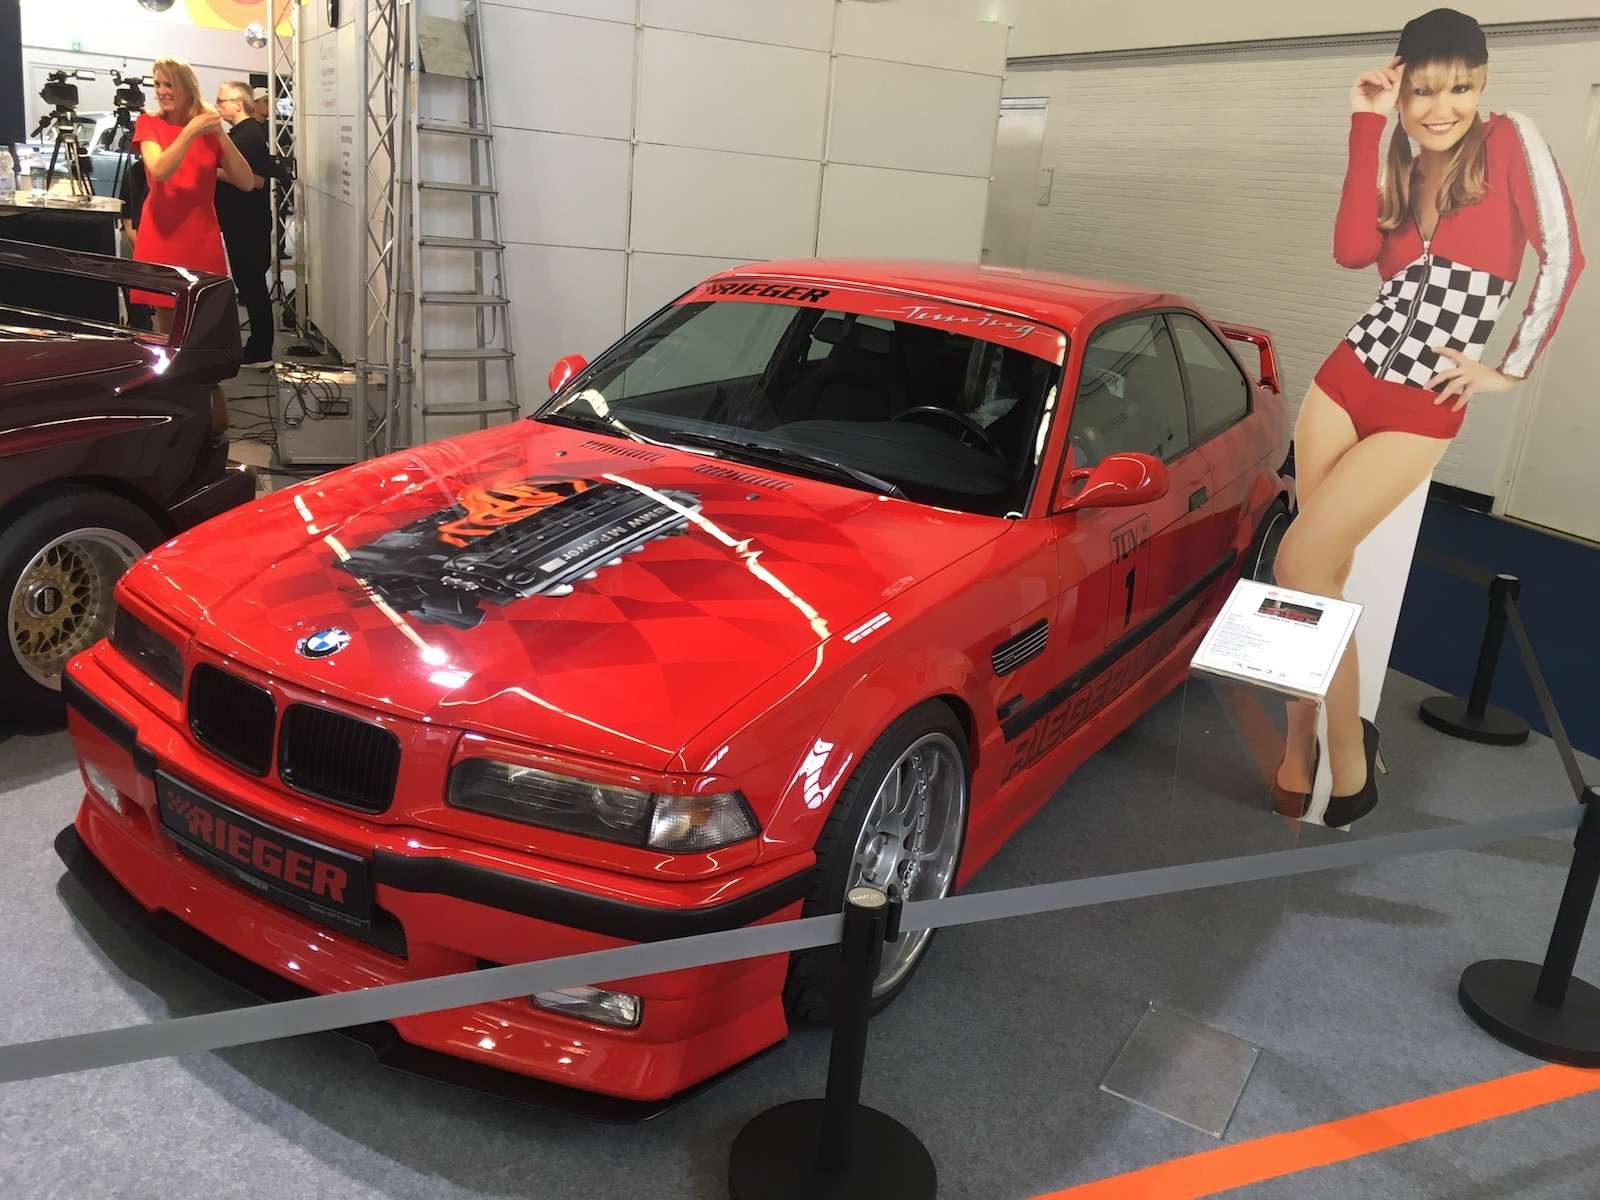 Rieger BMW E36 (35 000 евро)